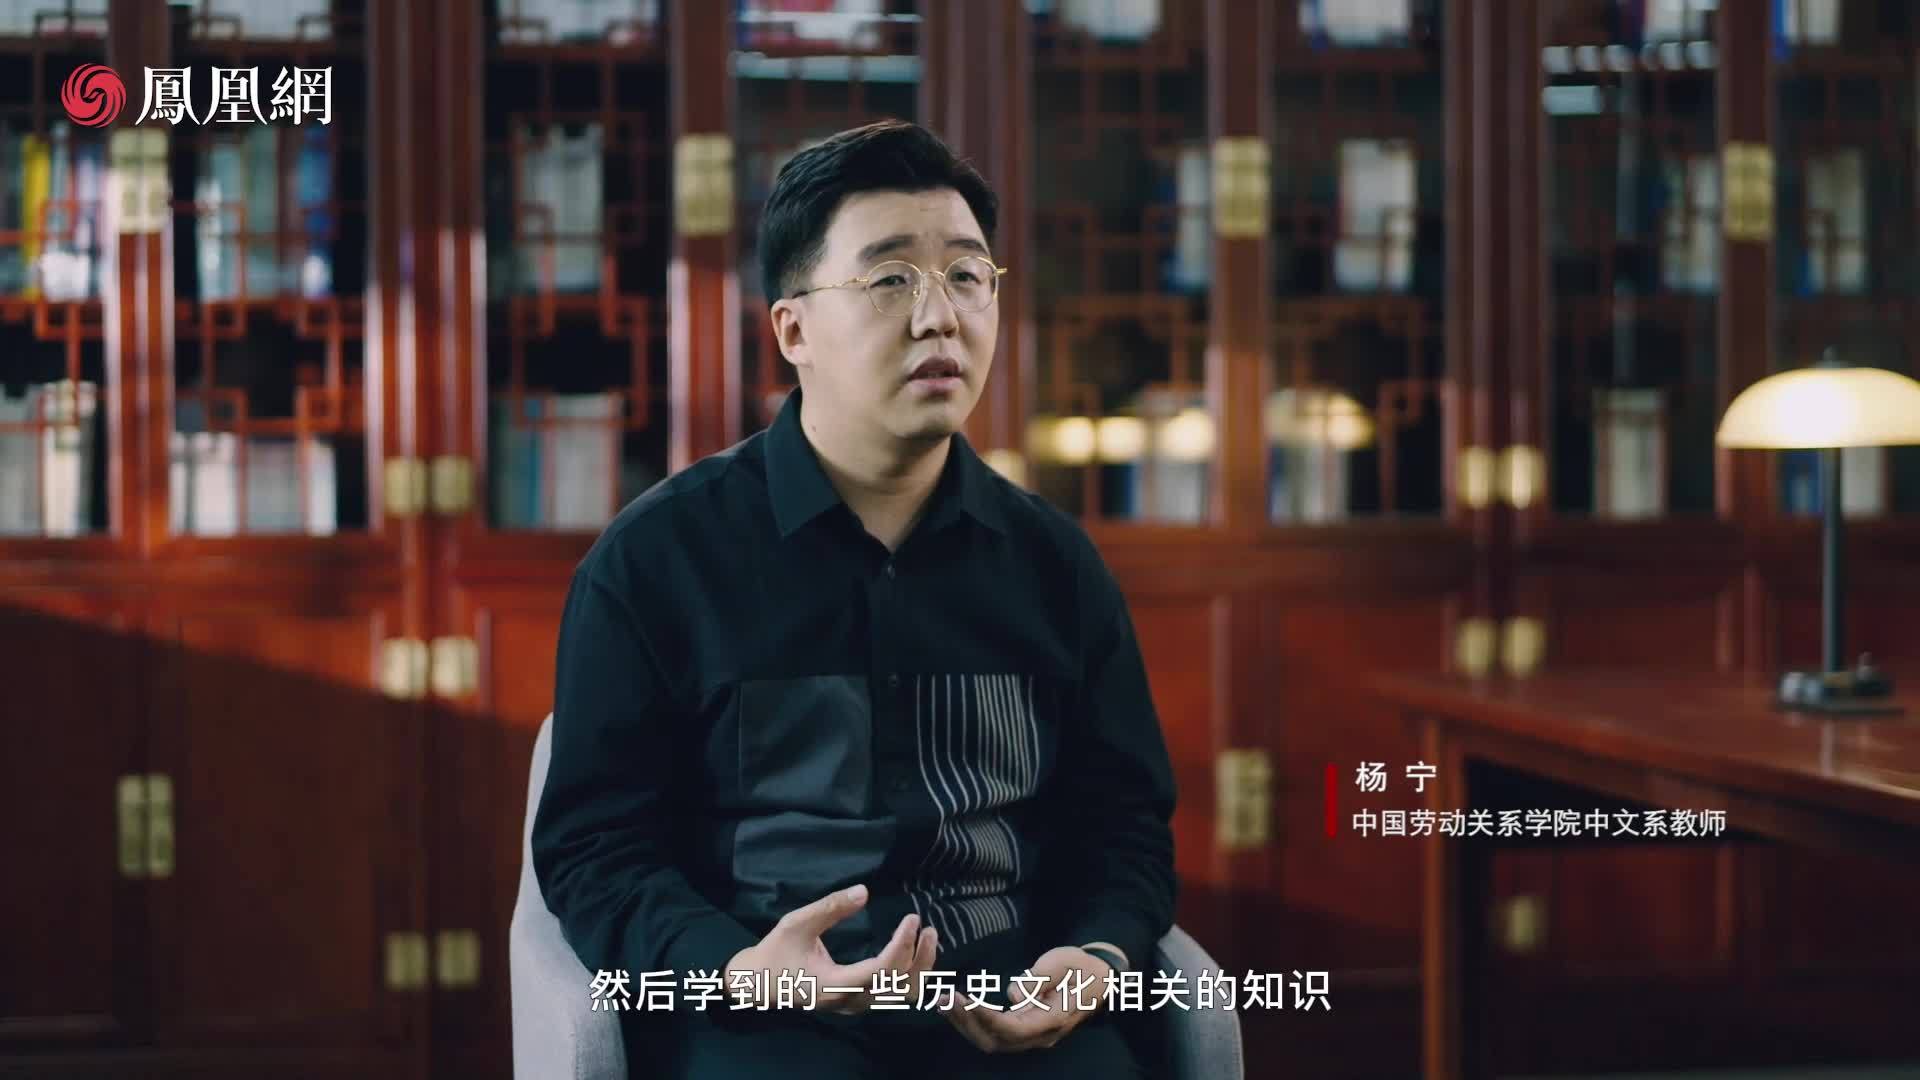 中华名师|网红教师杨宁带你走进中文系的魅力世界